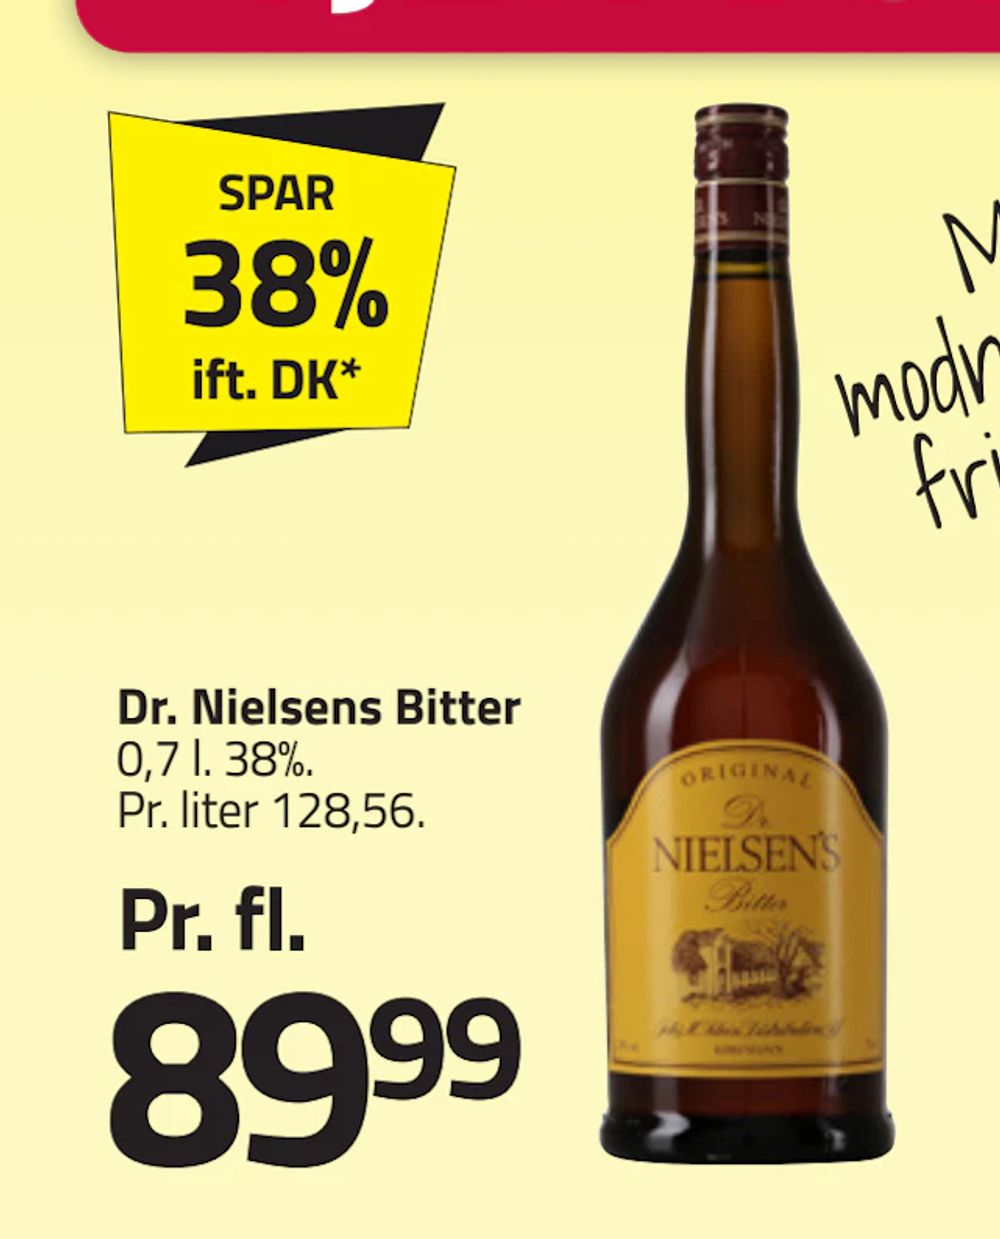 Tilbud på Dr. Nielsens Bitter fra Fleggaard til 89,99 kr.